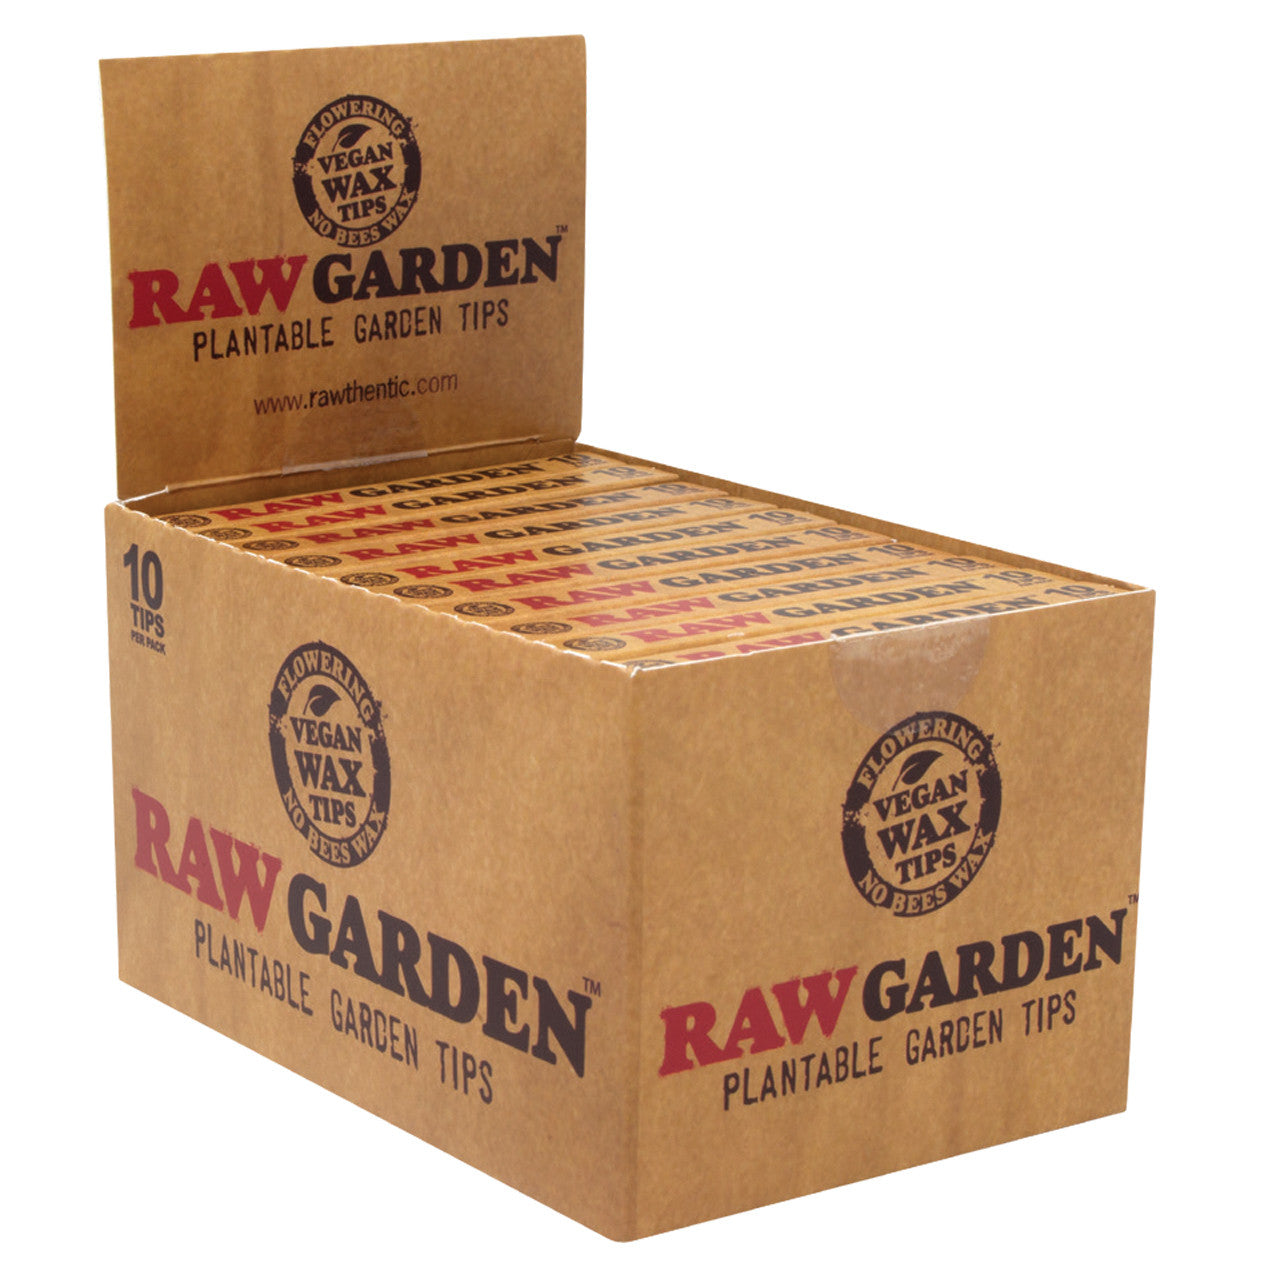 RAW Garden Plantable Wax Tips Display Box